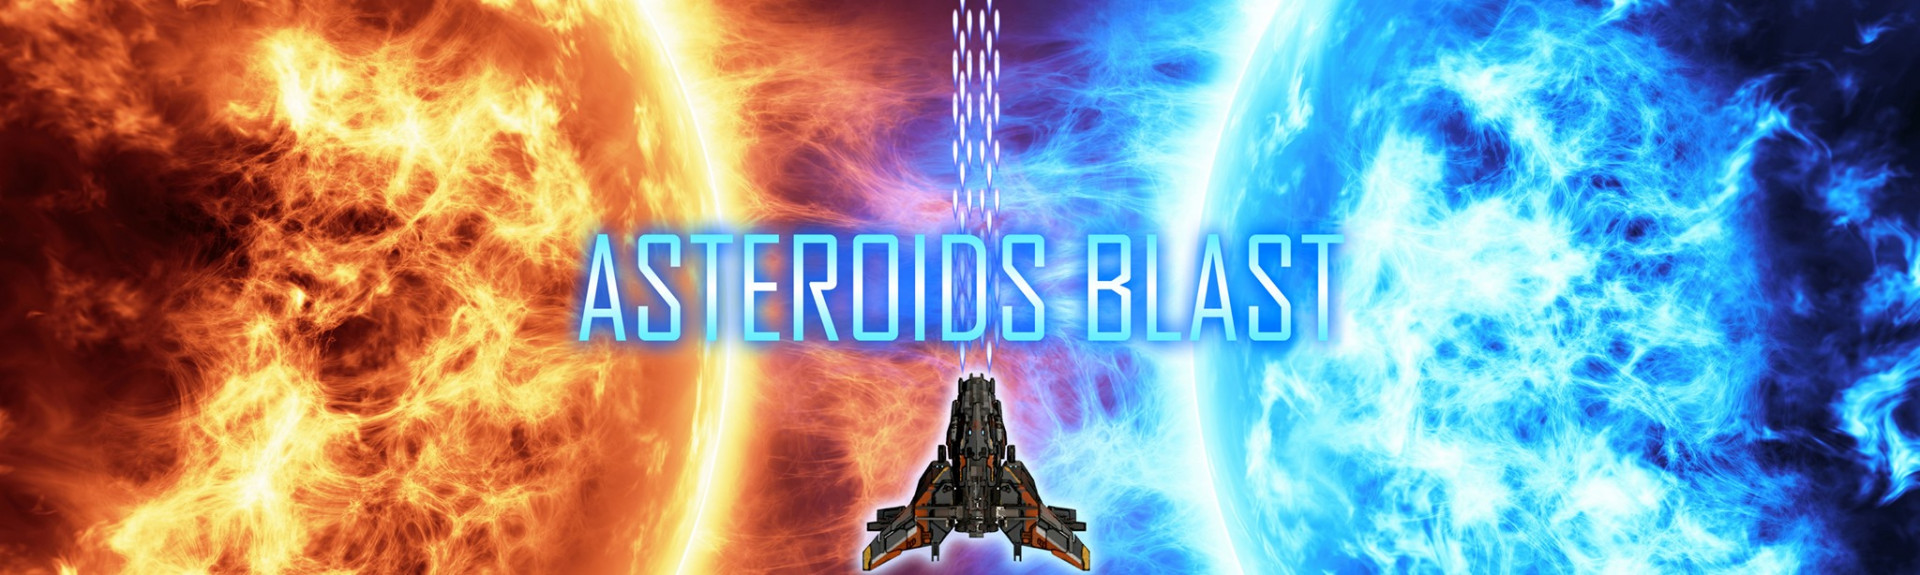 Asteroids Blast